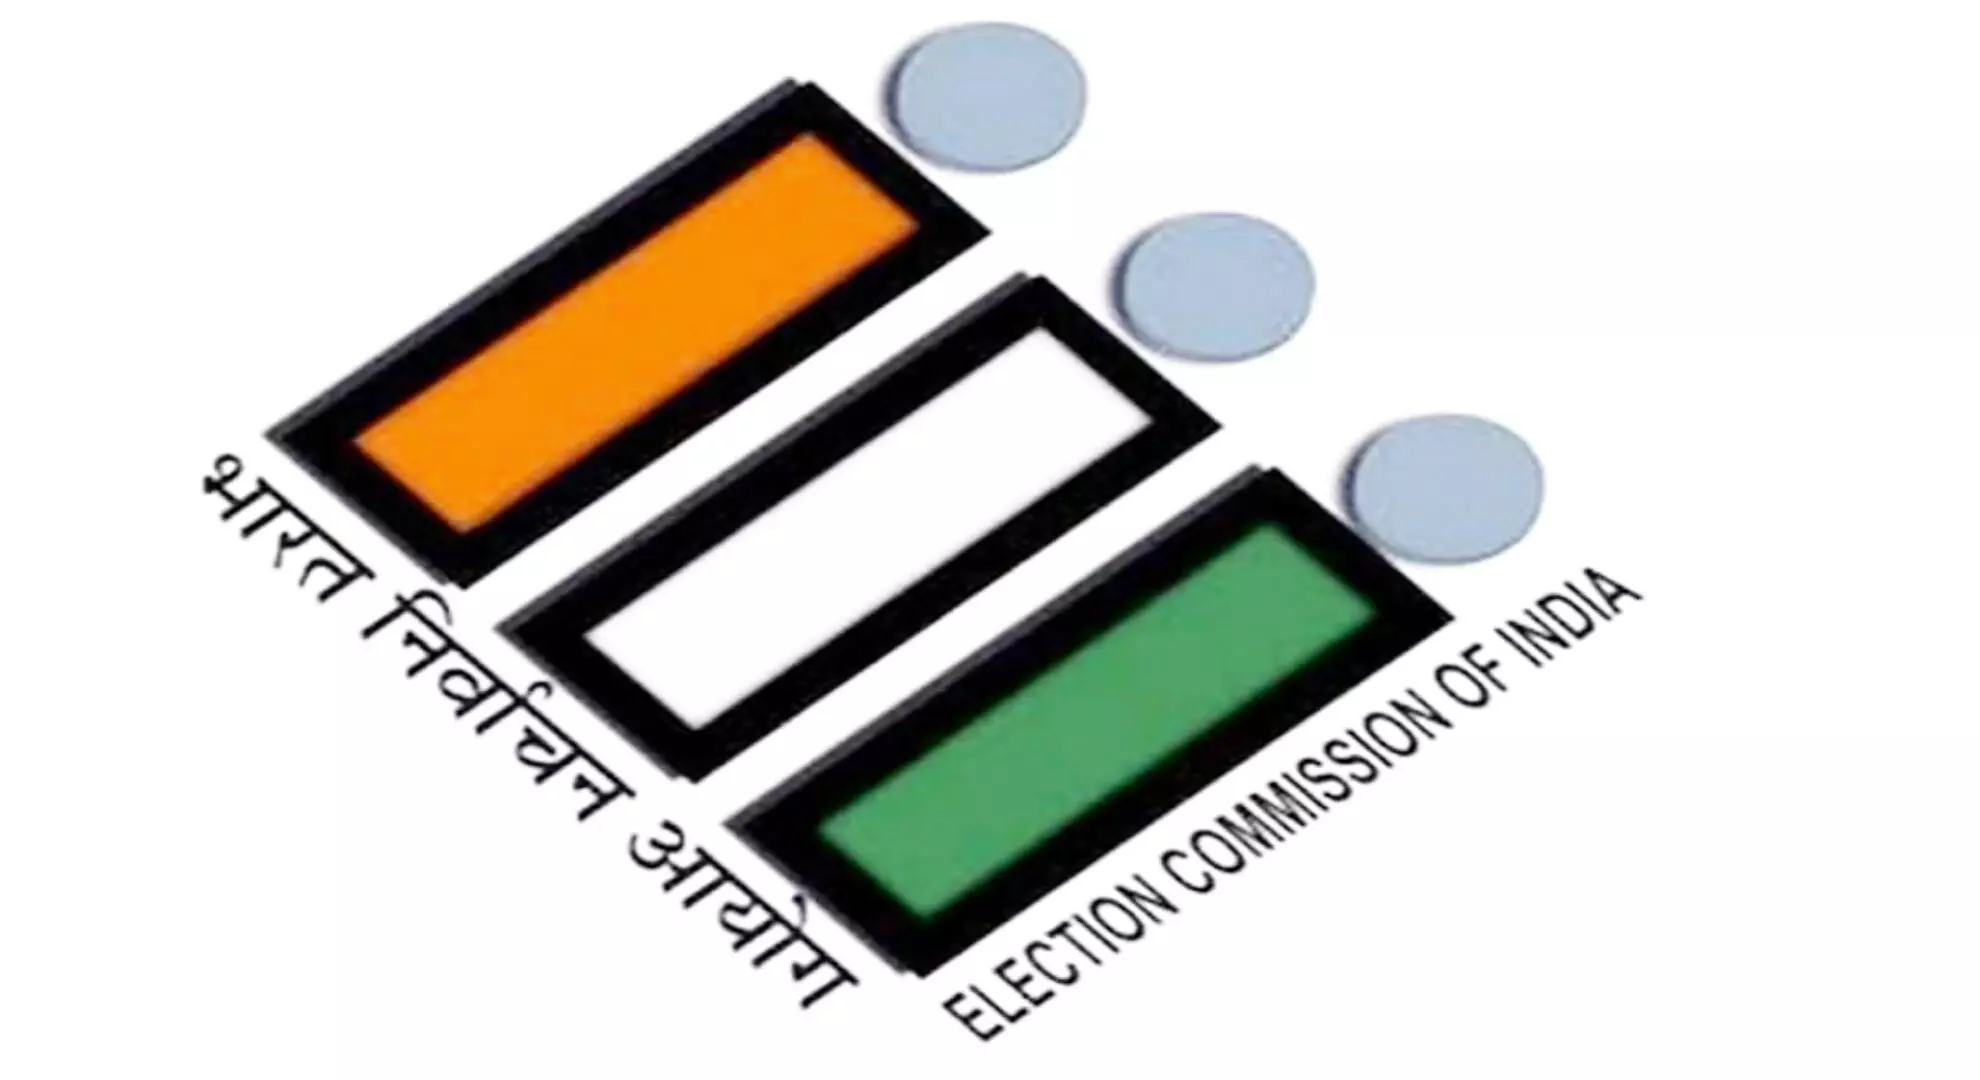 चुनाव अधिकारी ने थूथुकुडी जिले में मतदान केंद्रों का निरीक्षण किया